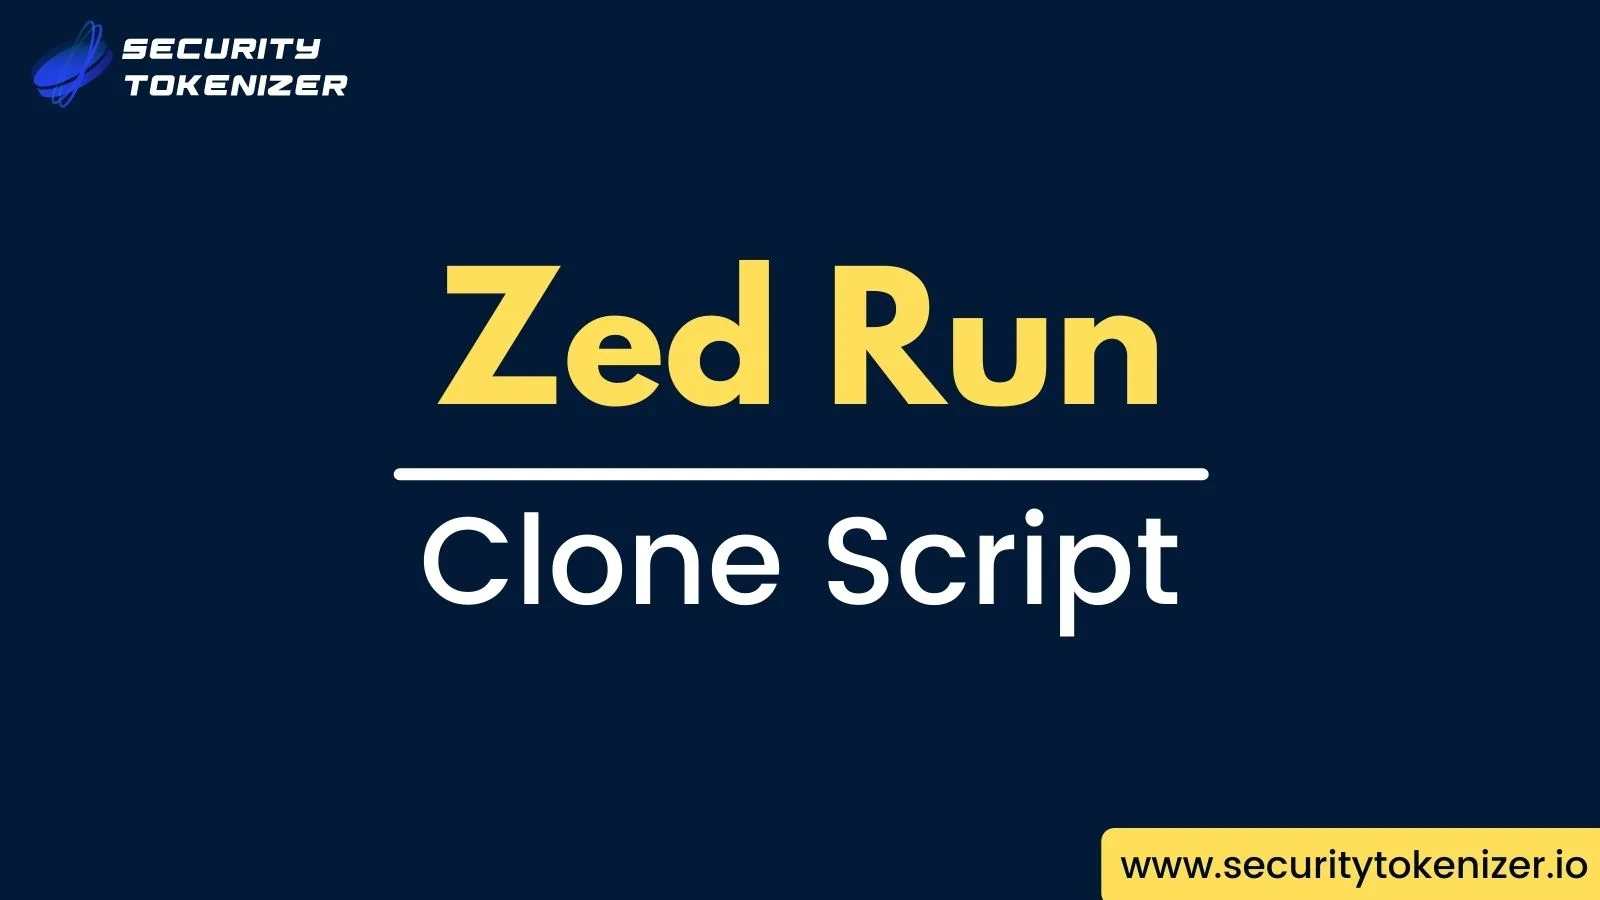 Zed Run Clone Script of Security Tokenizer